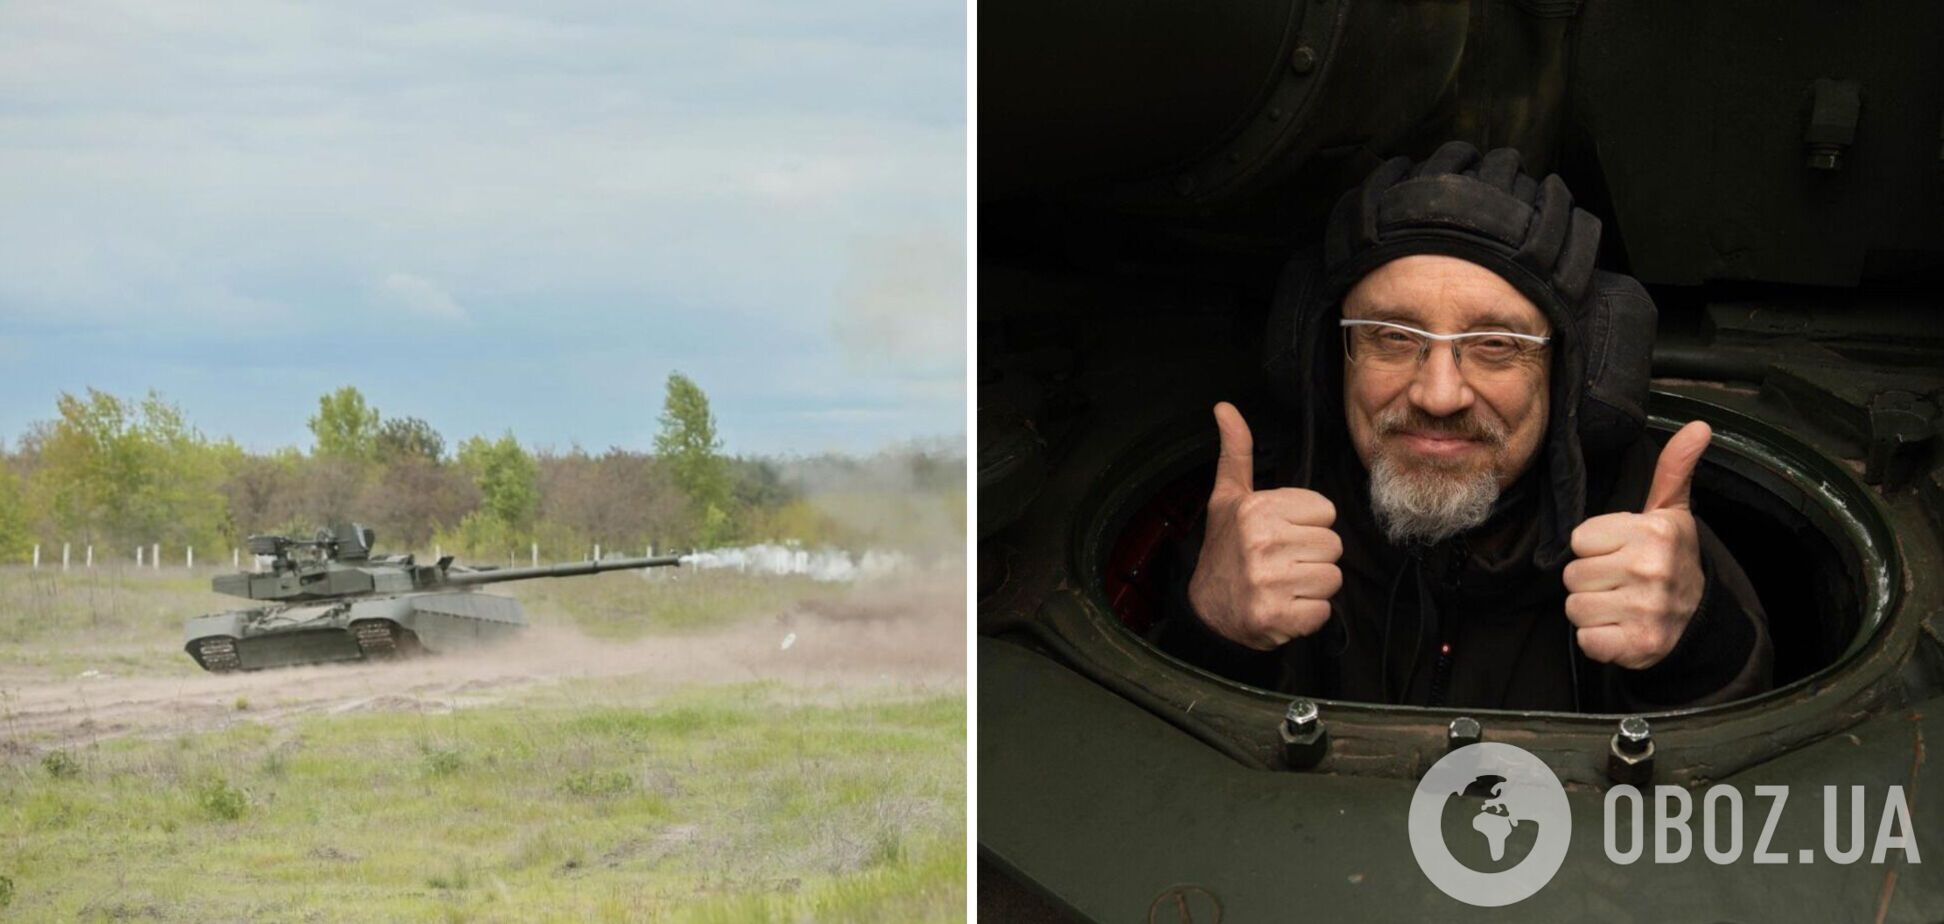 Олексій Резніков анонсував, що ЗСУ отримають українські танки Оплот